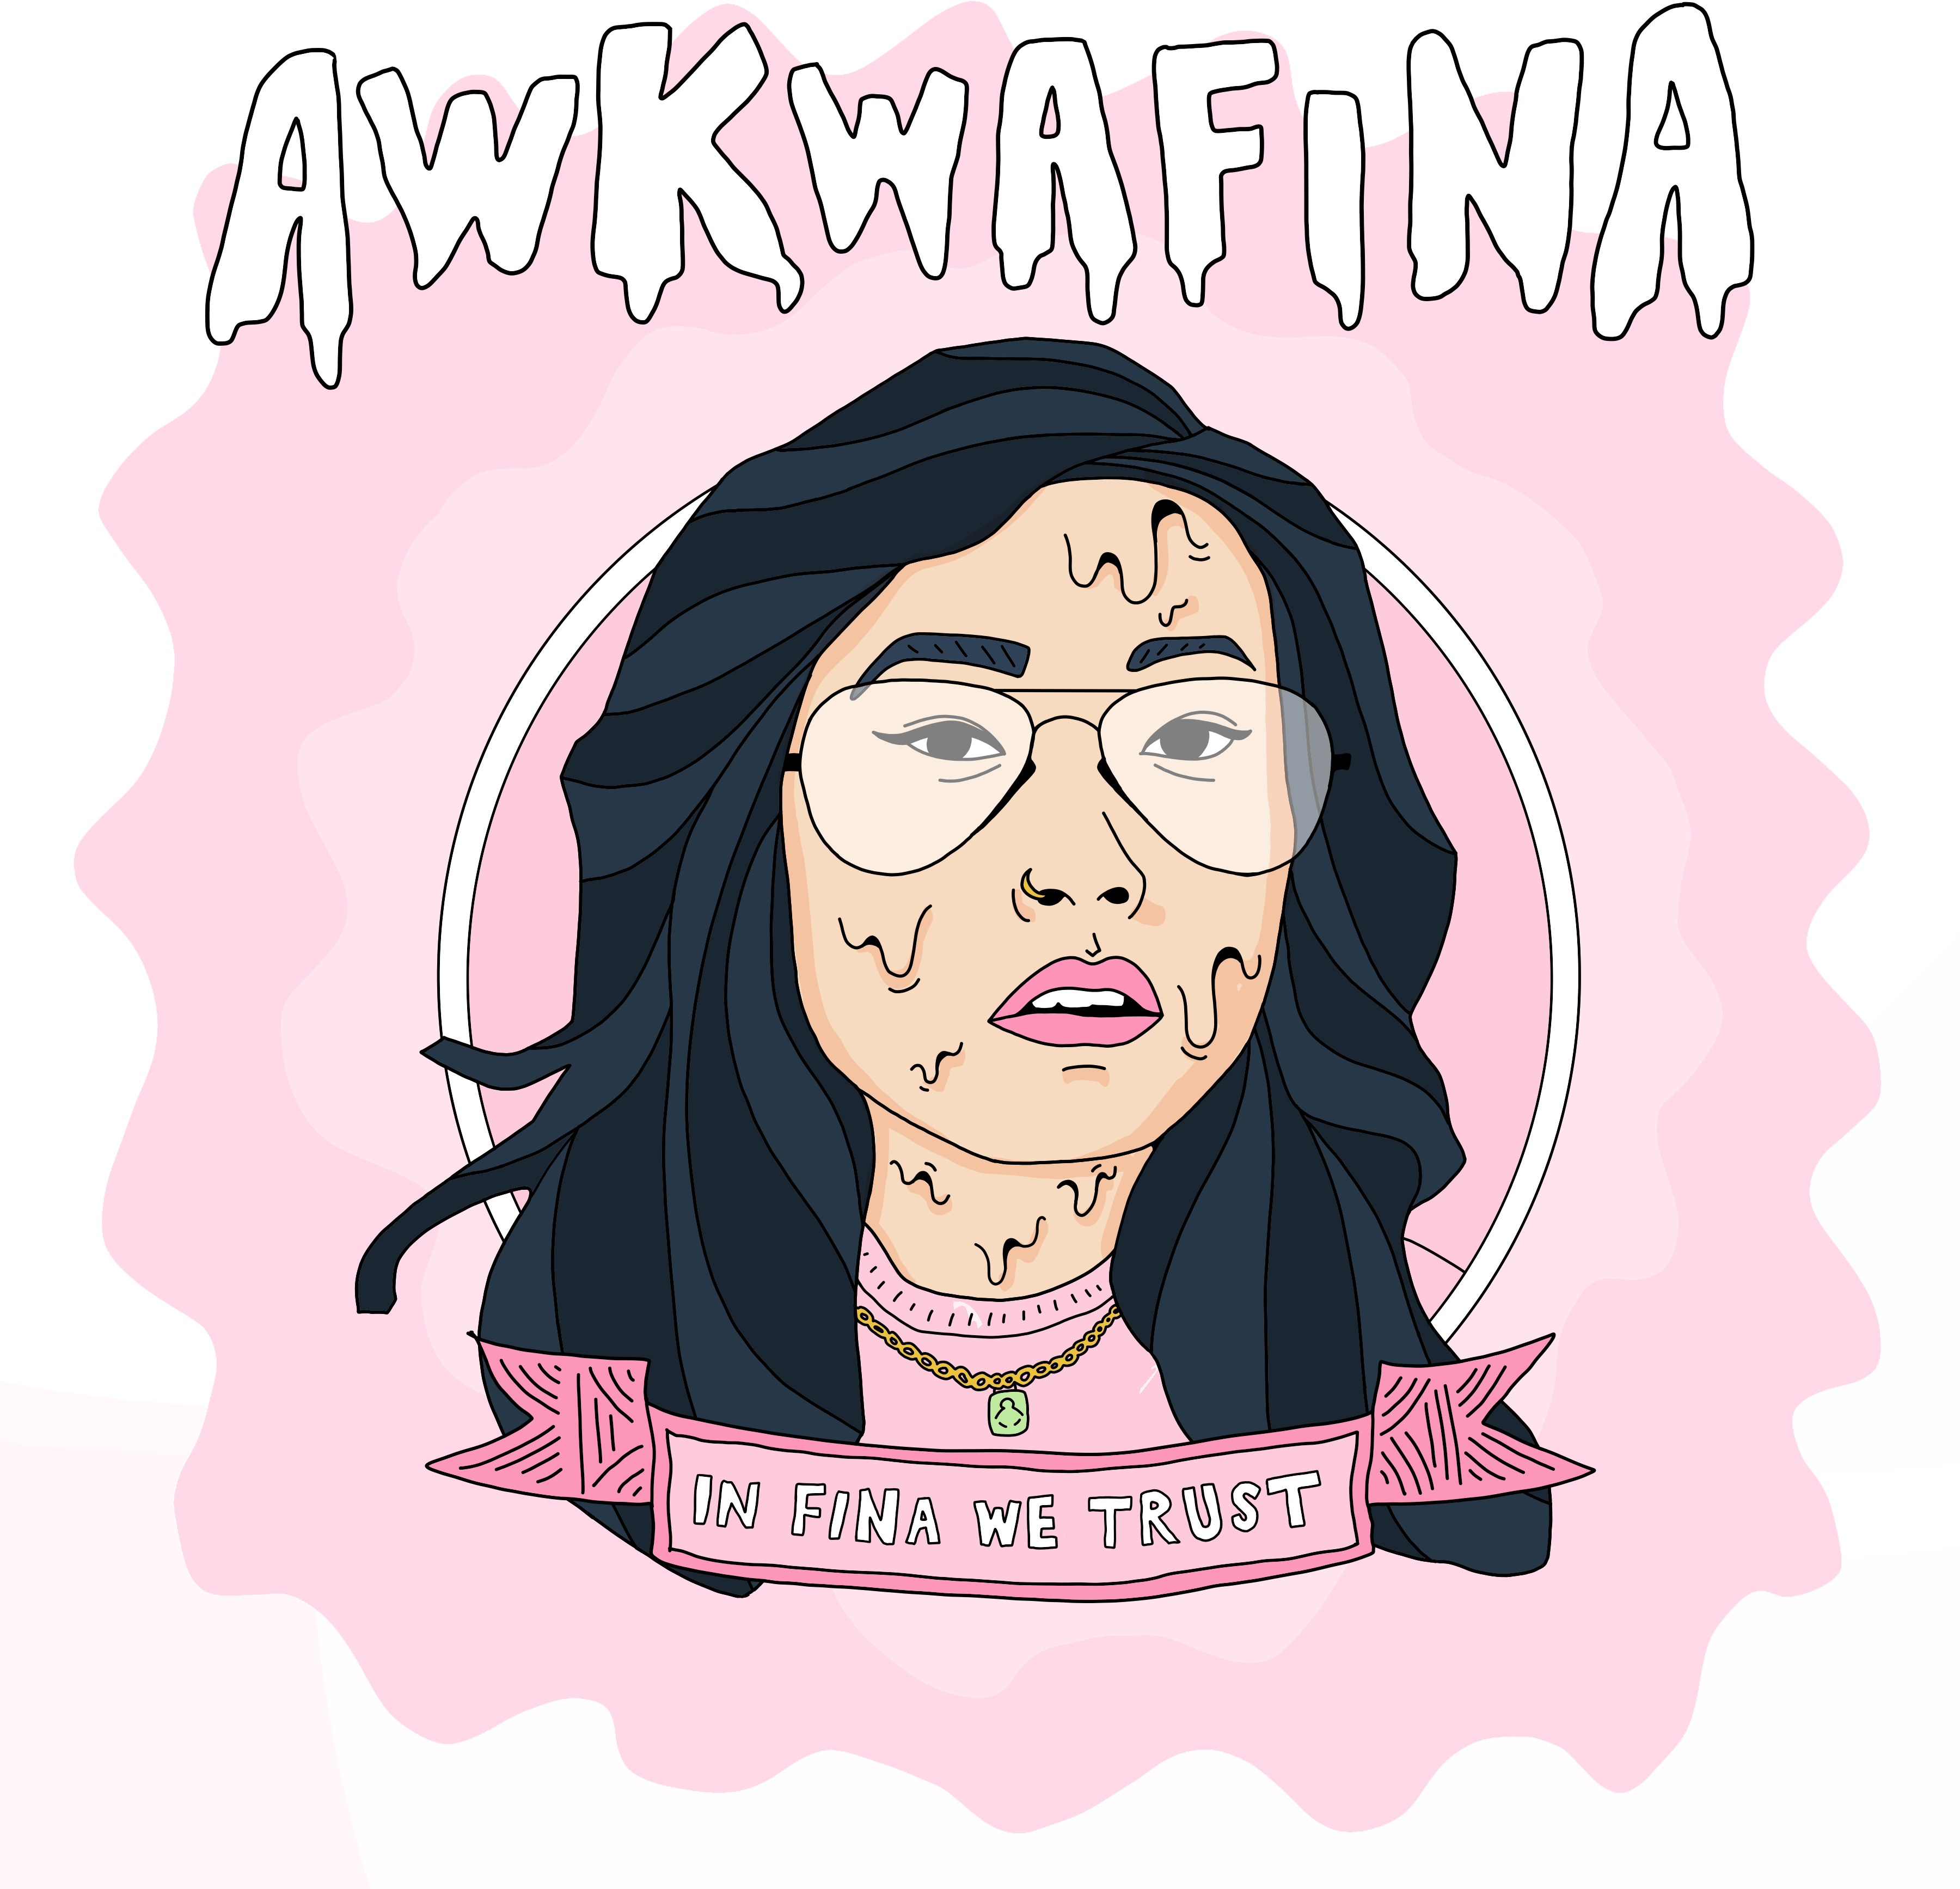 Awkwafina